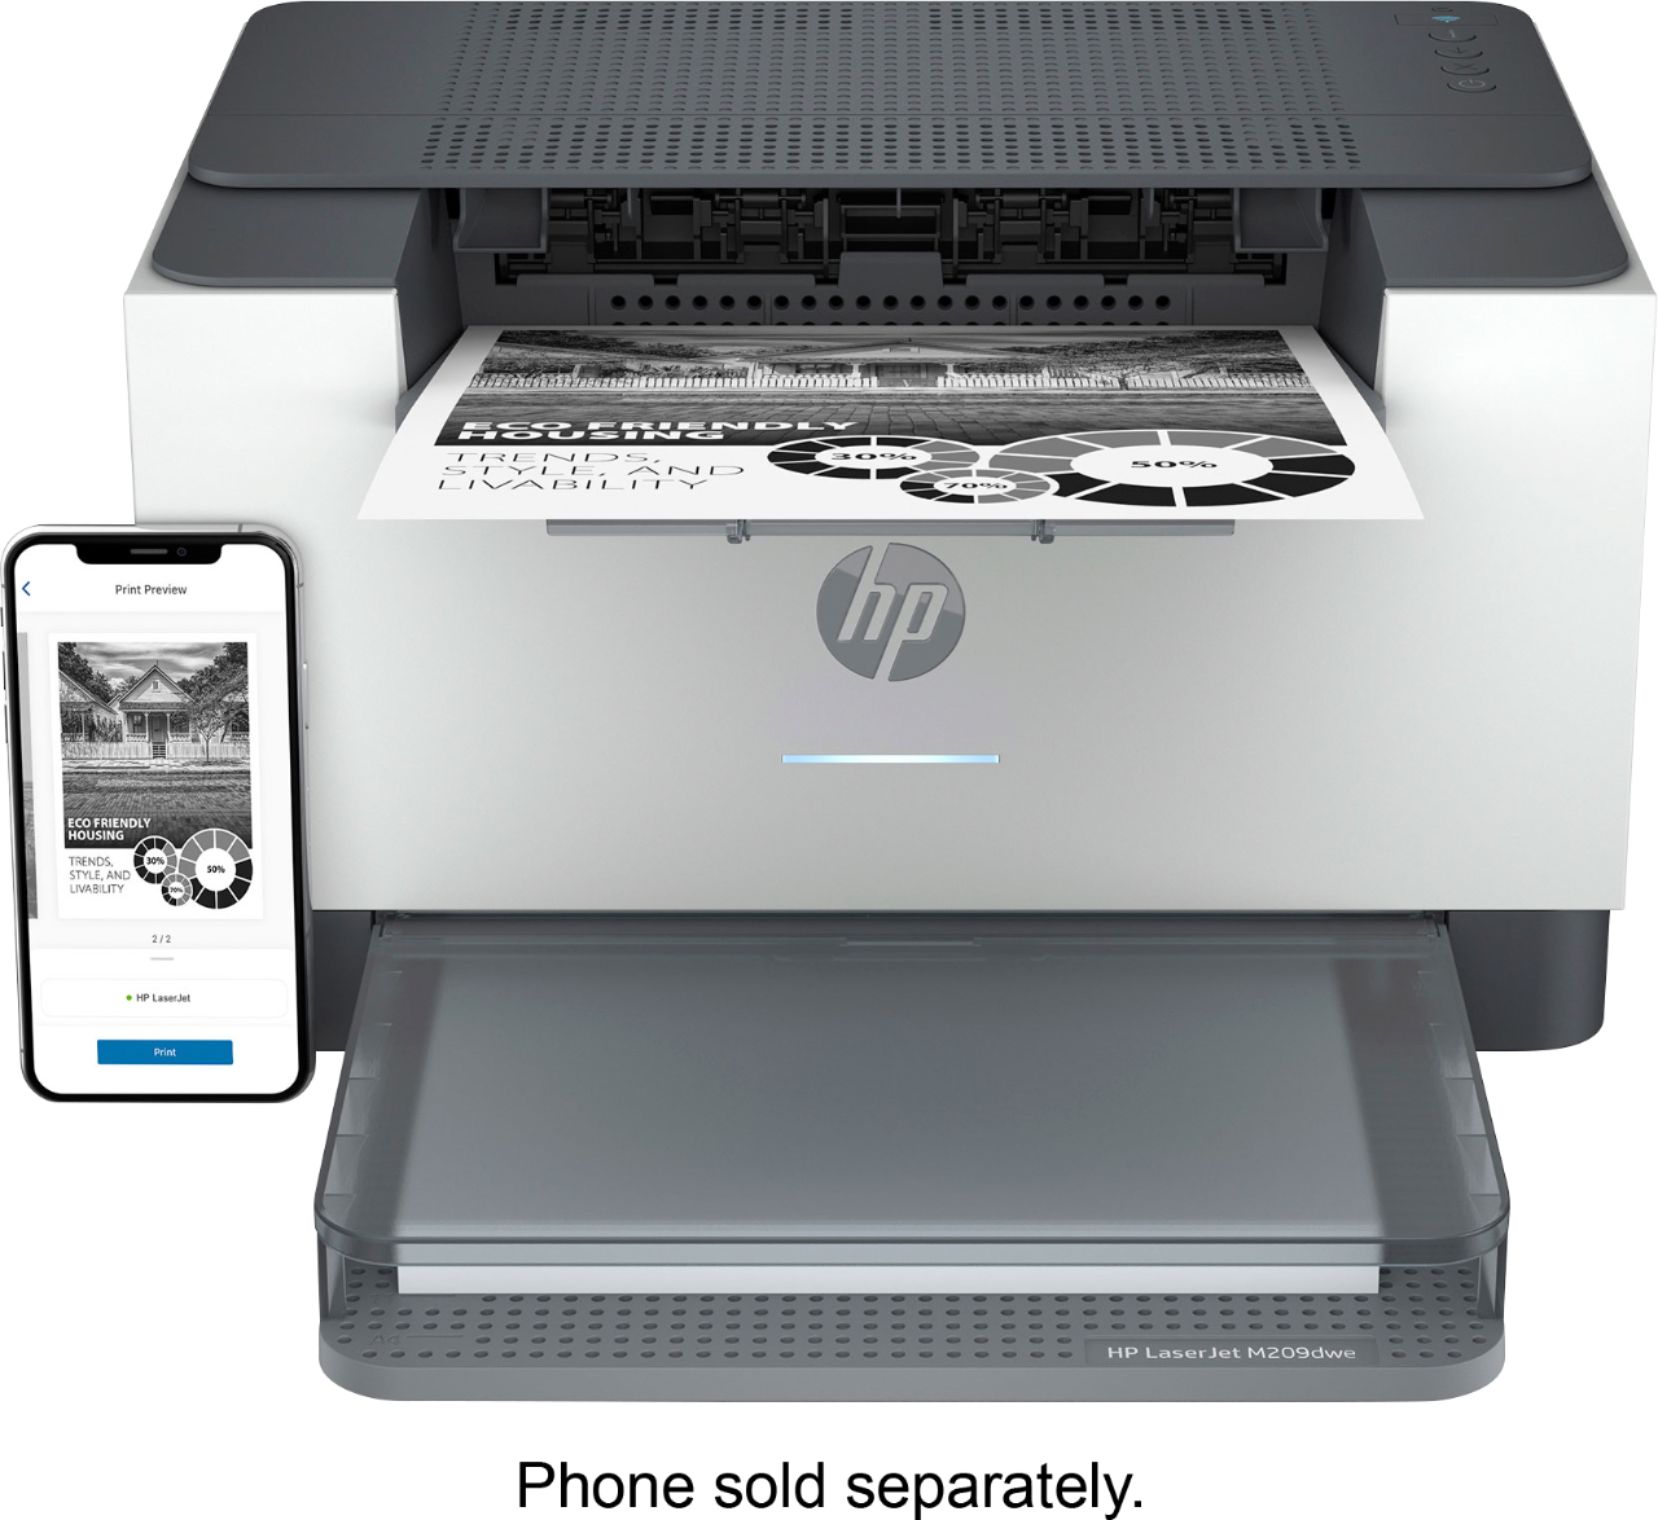 HP LaserJet M209dwe Wireless Black-and-White Laser Printer with 6